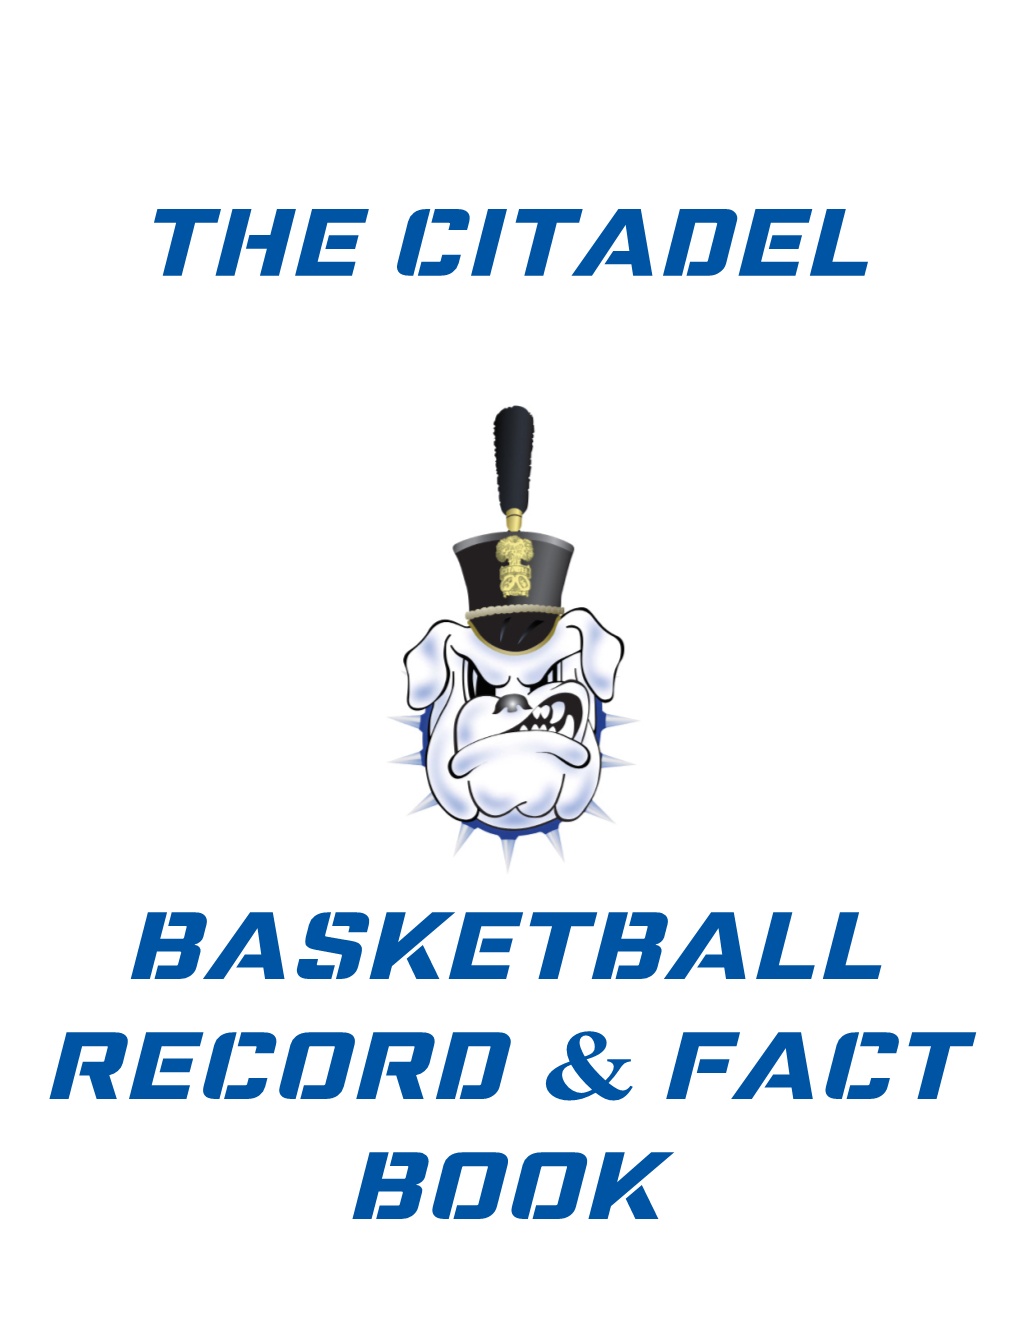 The Citadel Basketball Record & Fact Book